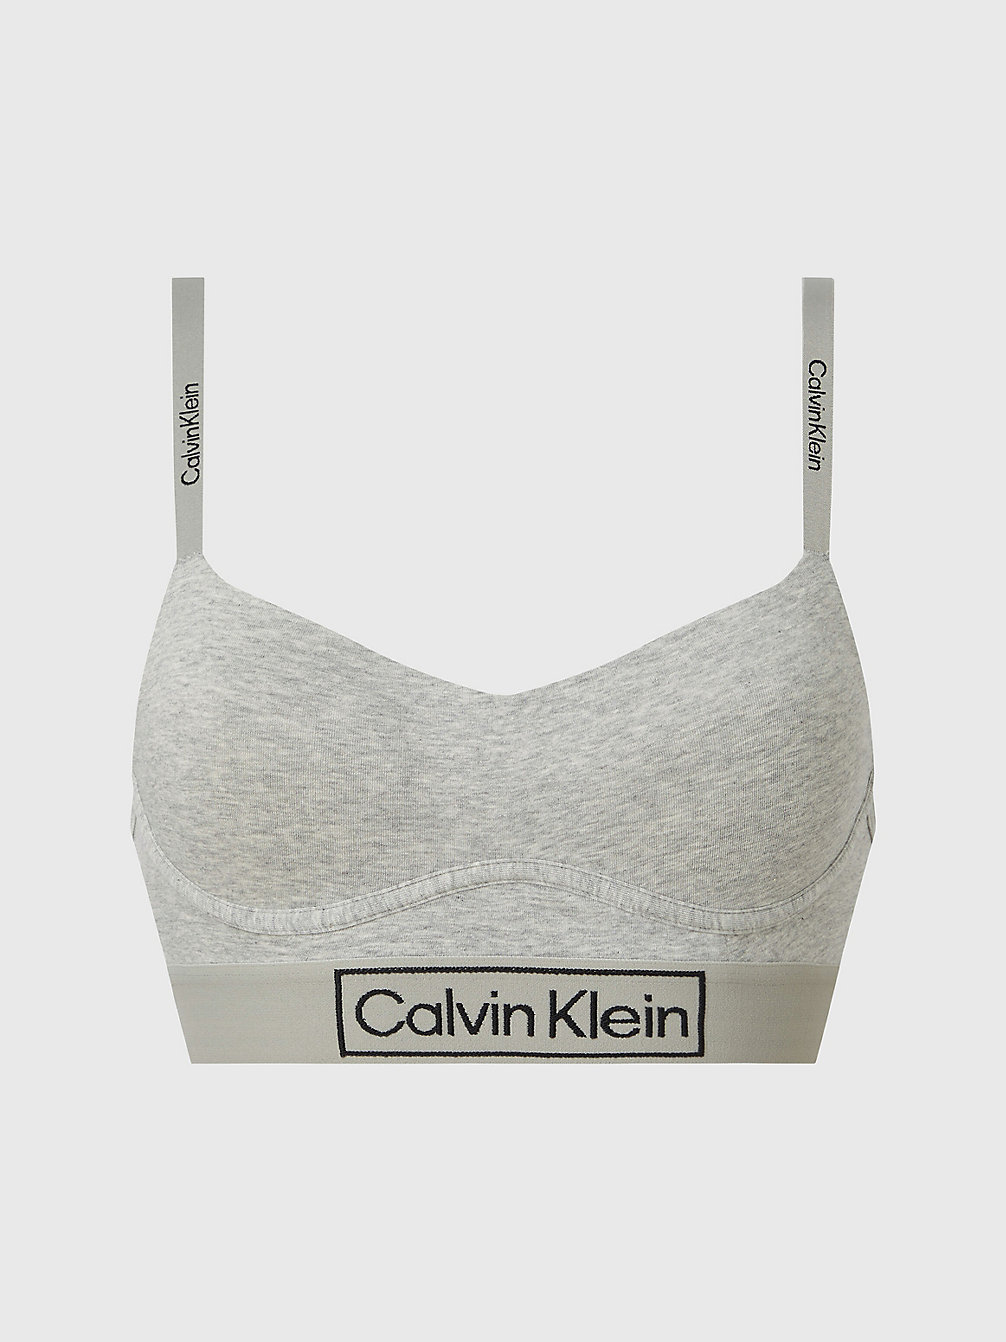 GREY HEATHER Bralette - Reimagined Heritage undefined women Calvin Klein